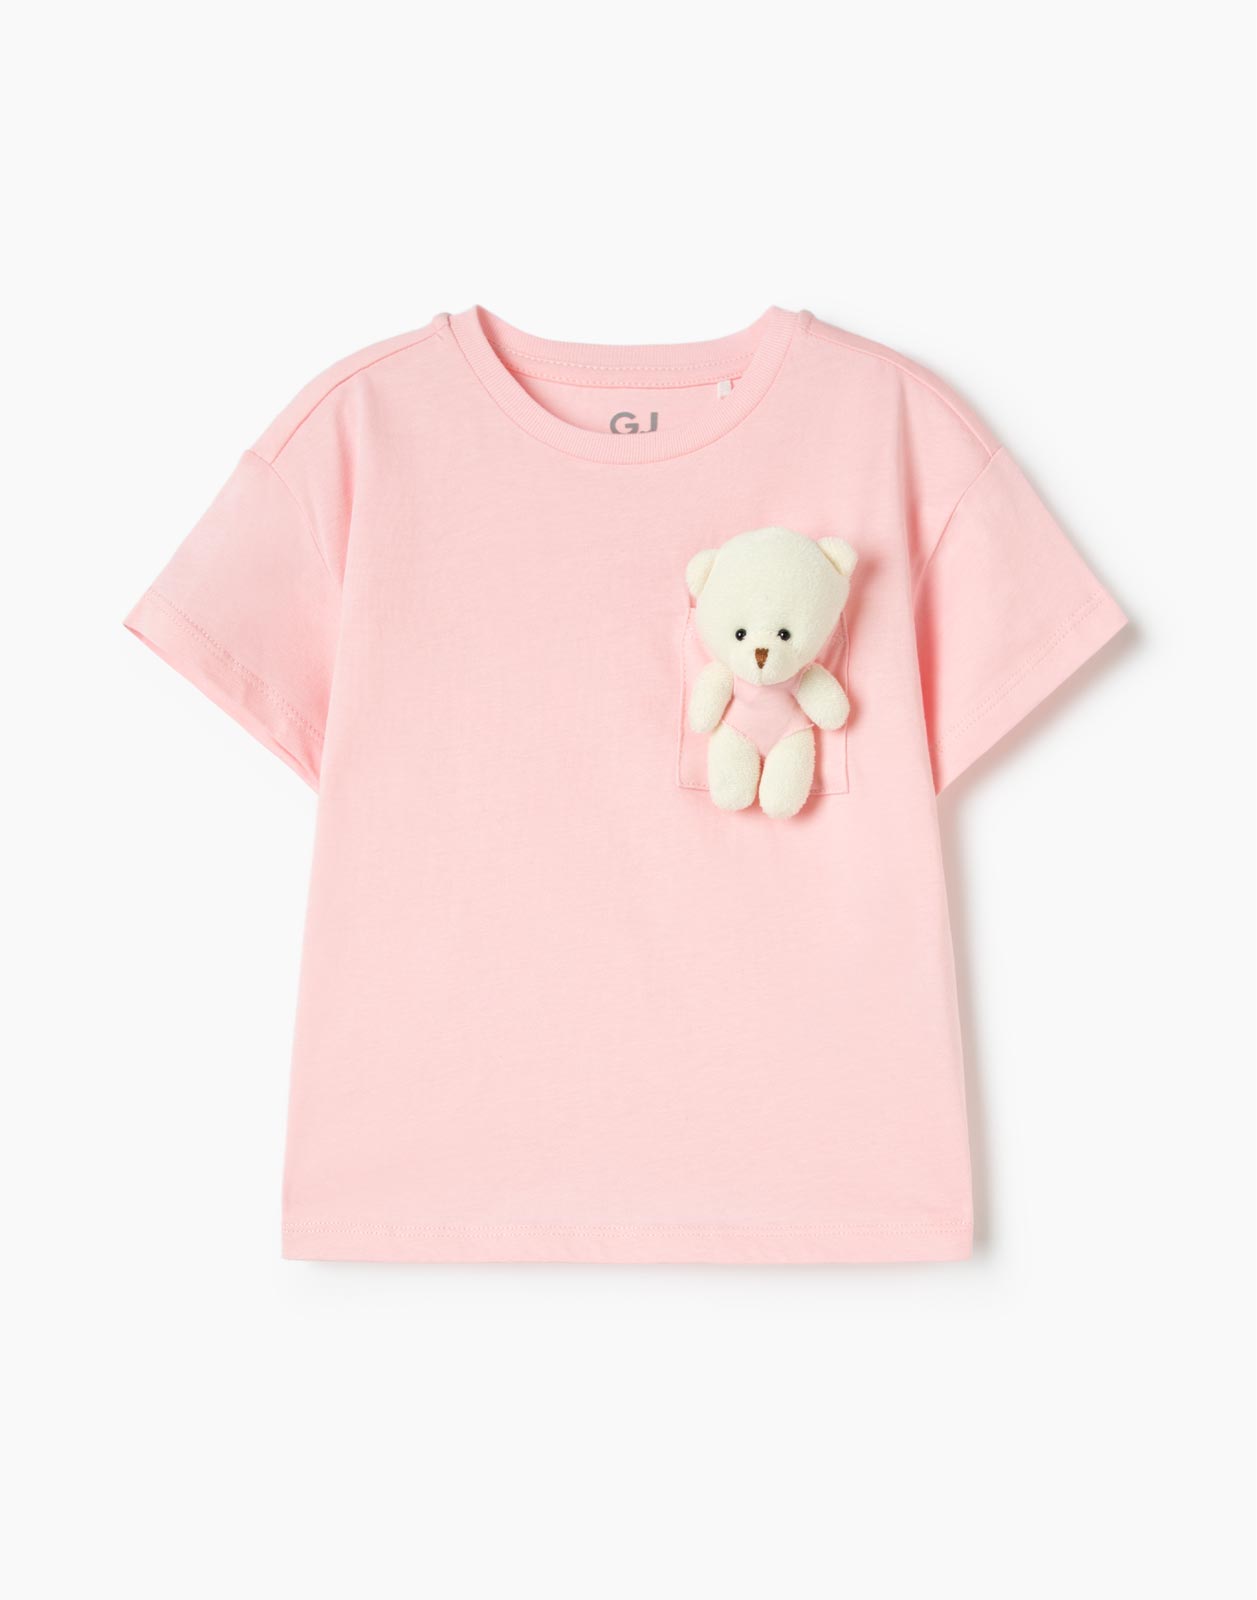 Розовая футболка oversize с нагрудным карманом и игрушкой для девочки 2-3г/98